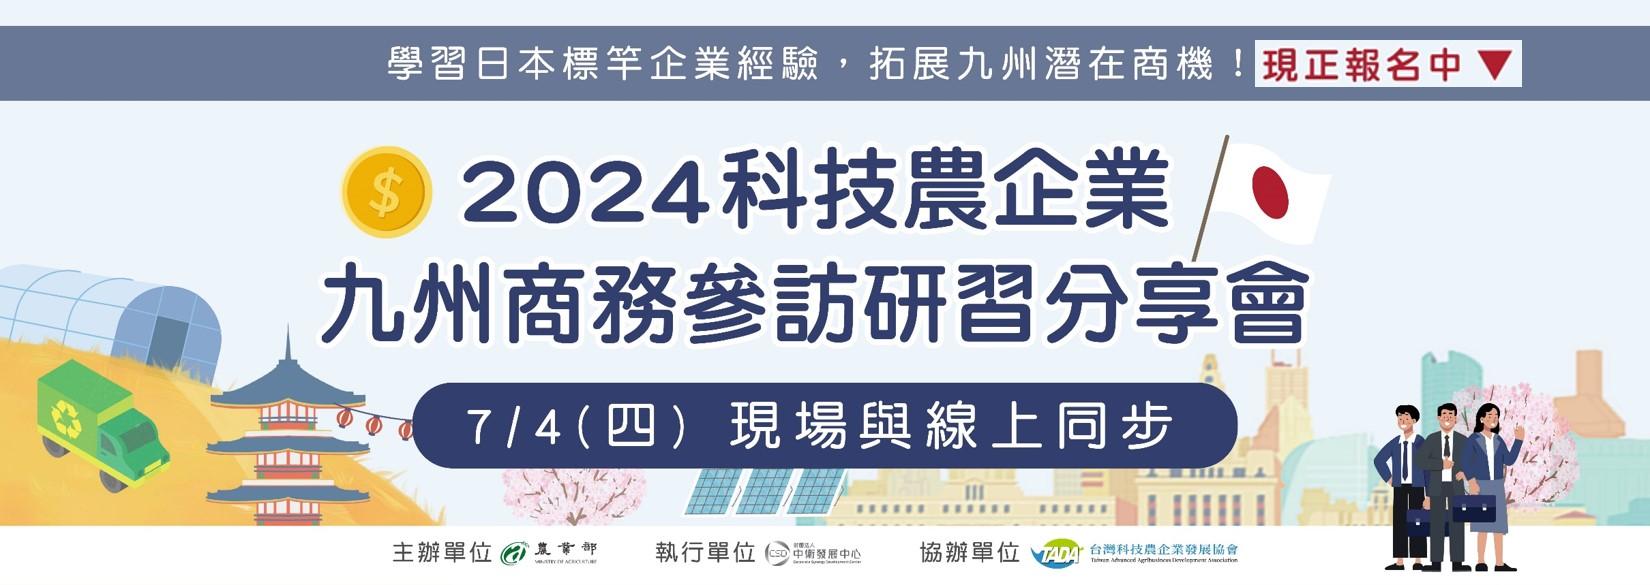 2024科技農企業九州商務參訪研習分享會